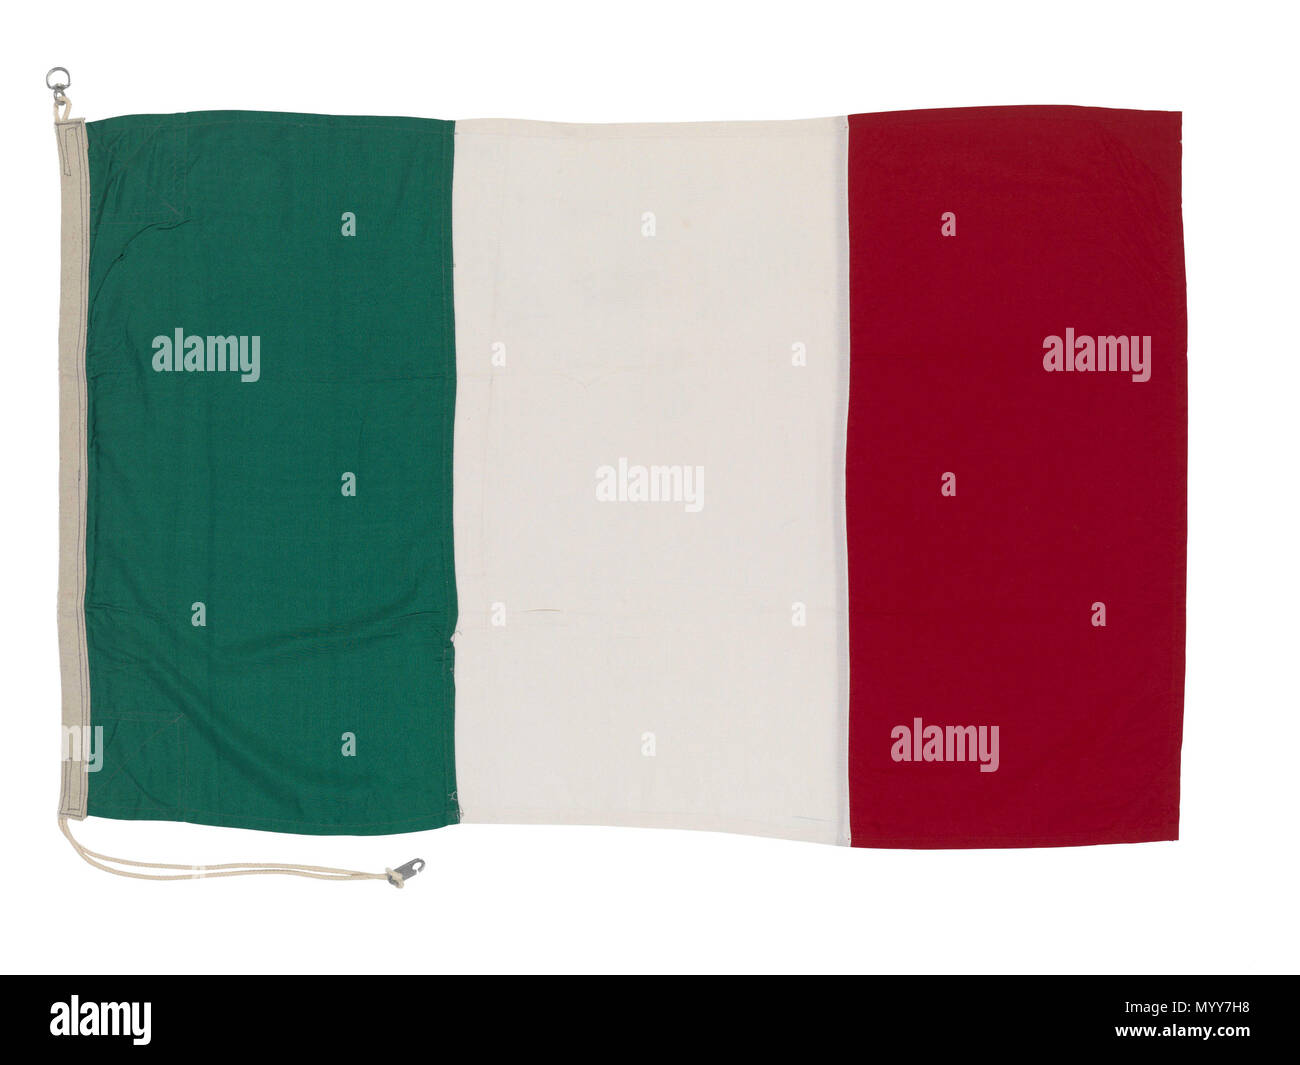 . Inglese: bandiera nazionale dell'Italia (dopo 1946) Post 1946 Italiano bandiera nazionale in fibra sintetica bunting con un tampone di cotone e lino blend paranco. La bandiera è macchina cucita con una corda e due fascette di alluminio attaccato. Essa ha tre strisce verticali in verde, bianco e rosso. Bandiera nazionale dell'Italia (dopo 1946) . dopo il 1946. Rudolph Equitz & Co 73 bandiera nazionale dell'Italia (dopo 1946) RMG L0134 Foto Stock